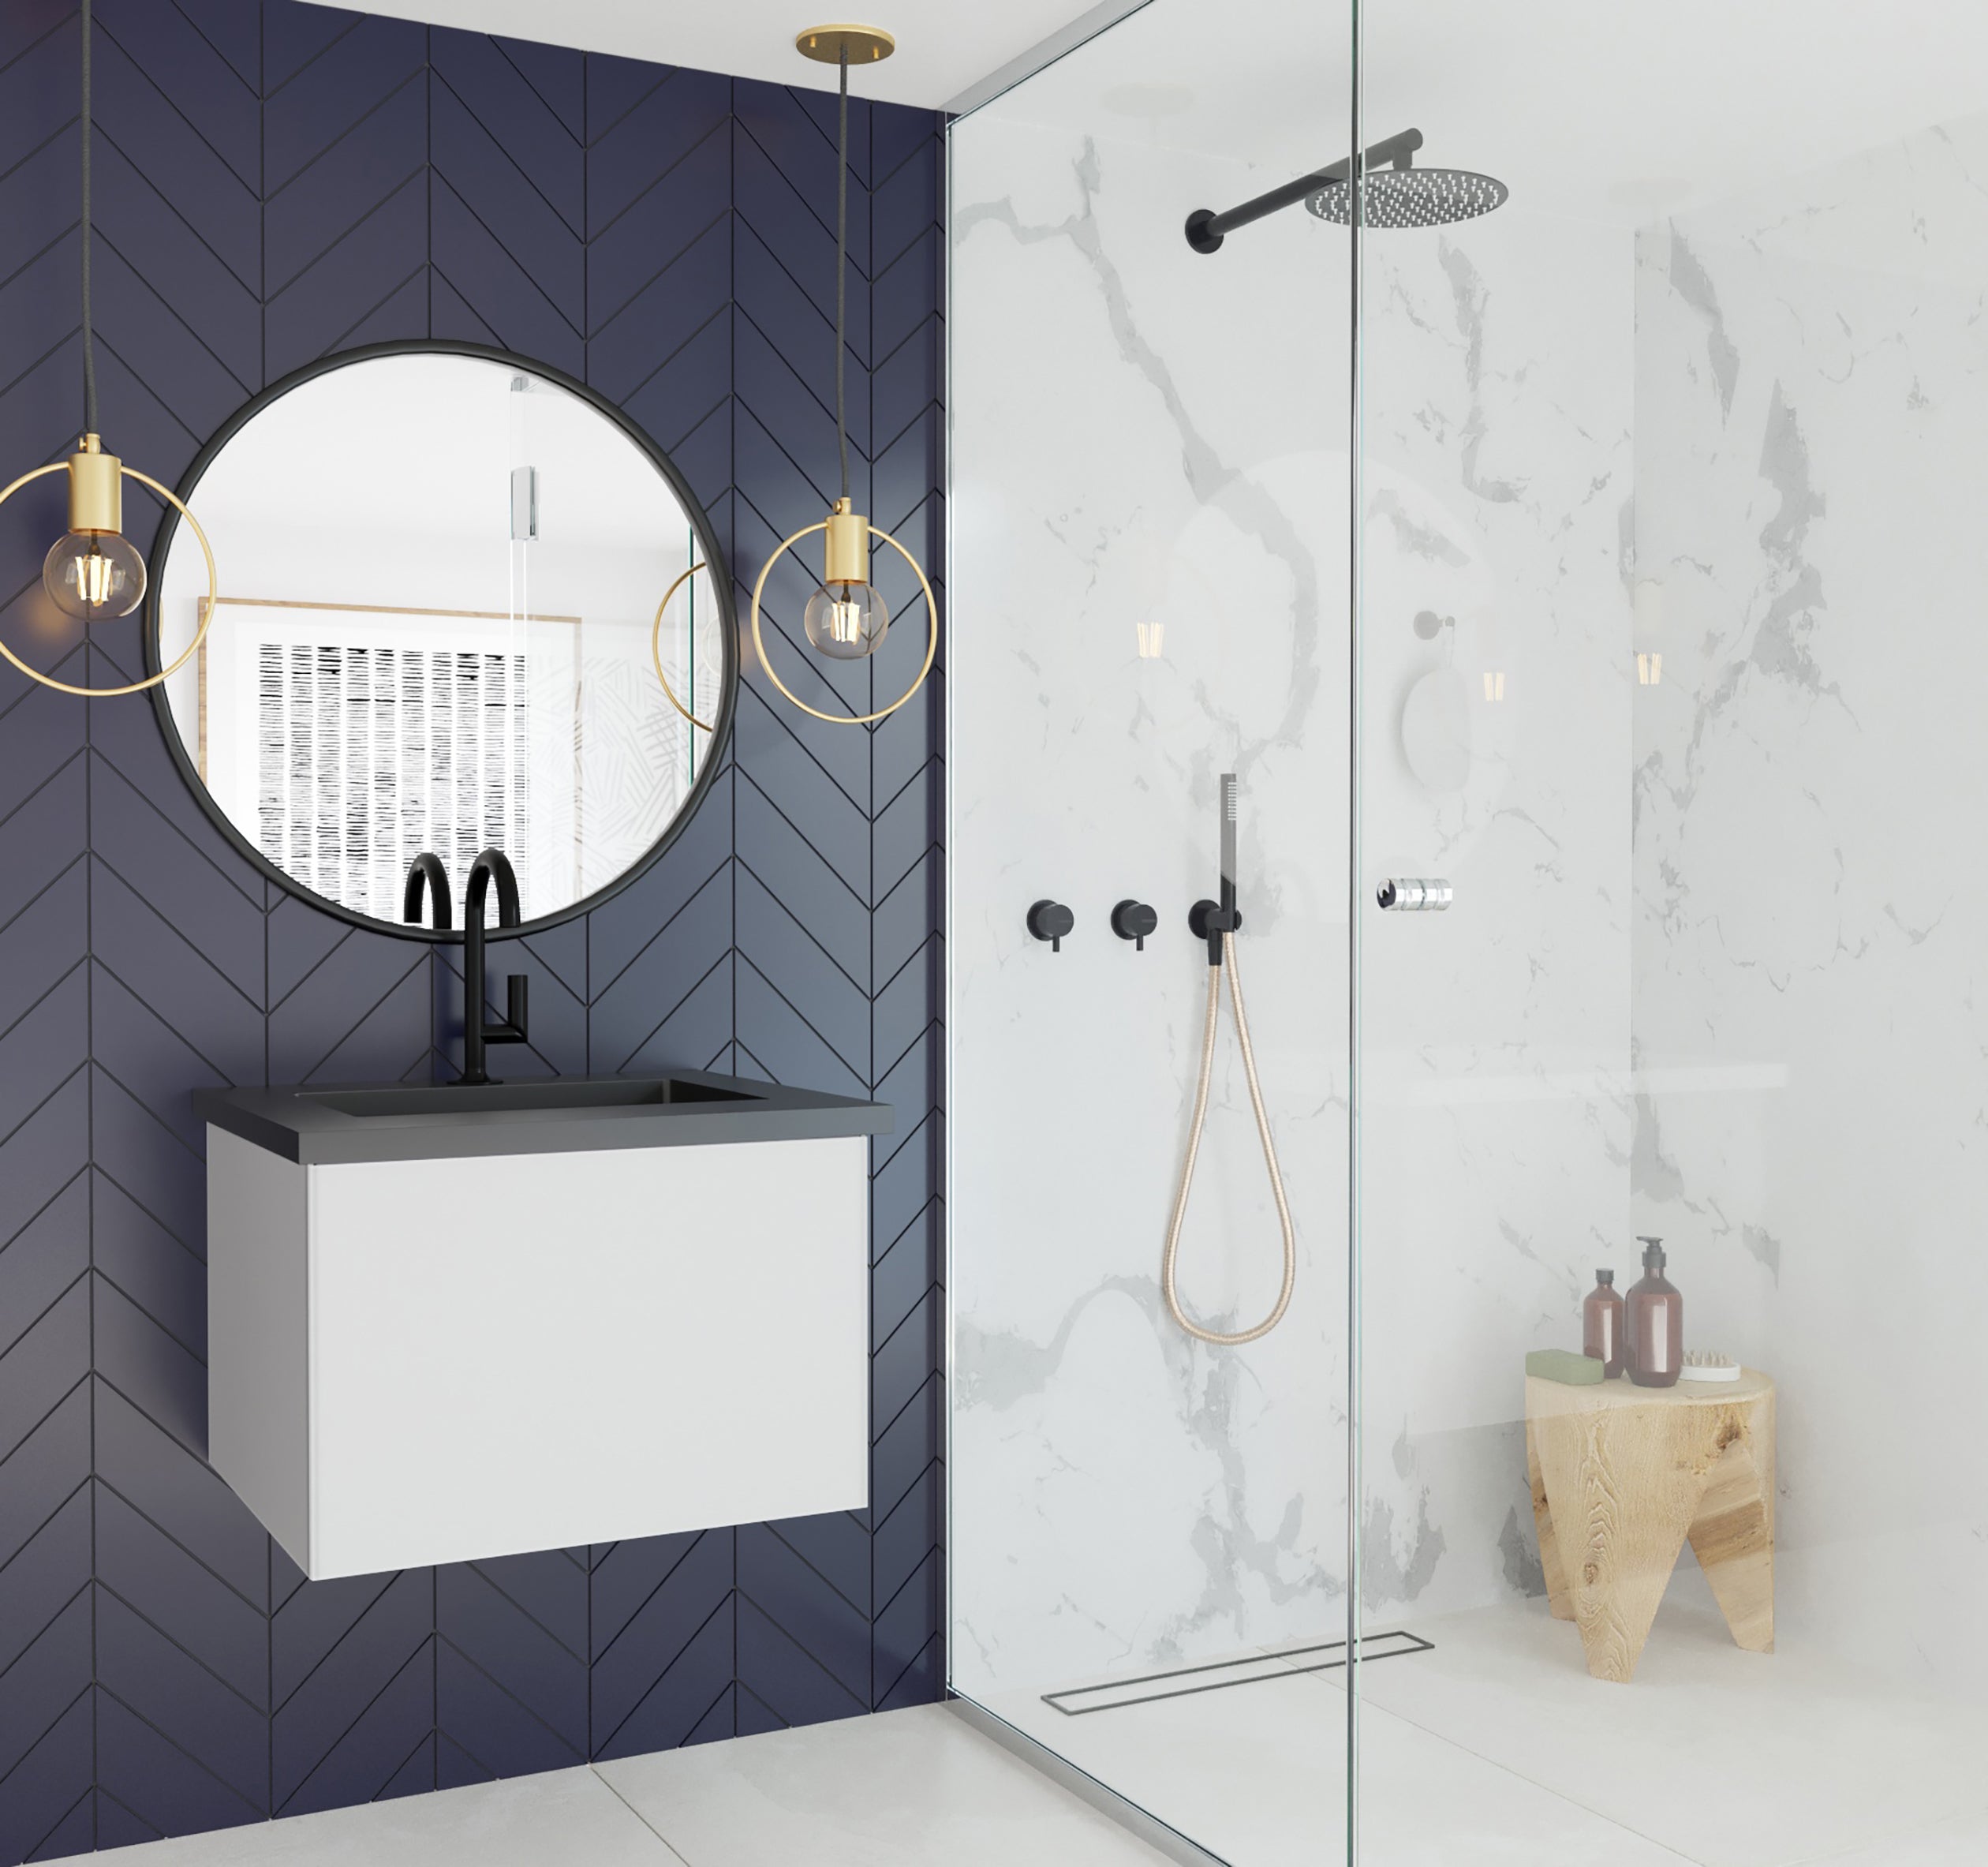 Laviva Vitri 24" Bathroom Vanity Set w/ Sink in White | 313VTR-24CW